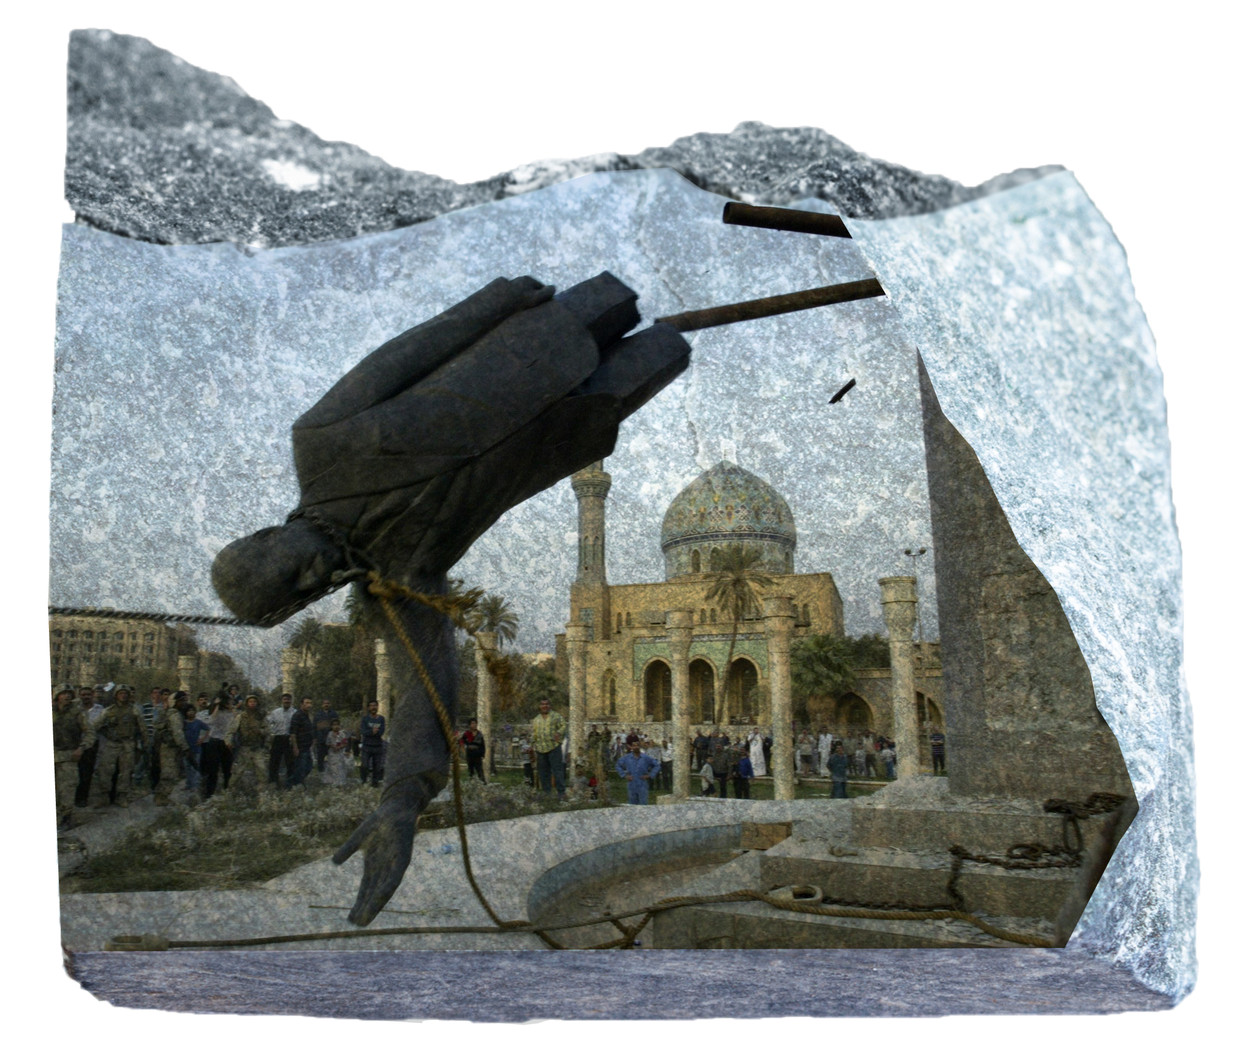 Na de inval in Irak in 2003 werd in Bagdad een enorm beeld van de verdreven dictator Saddam Hussein omver getrokken door Amerikaanse militairen. Irakezen grepen hun kans voor een eigen stormloop op monumenten en portretten. Beeld Brechtje Rood